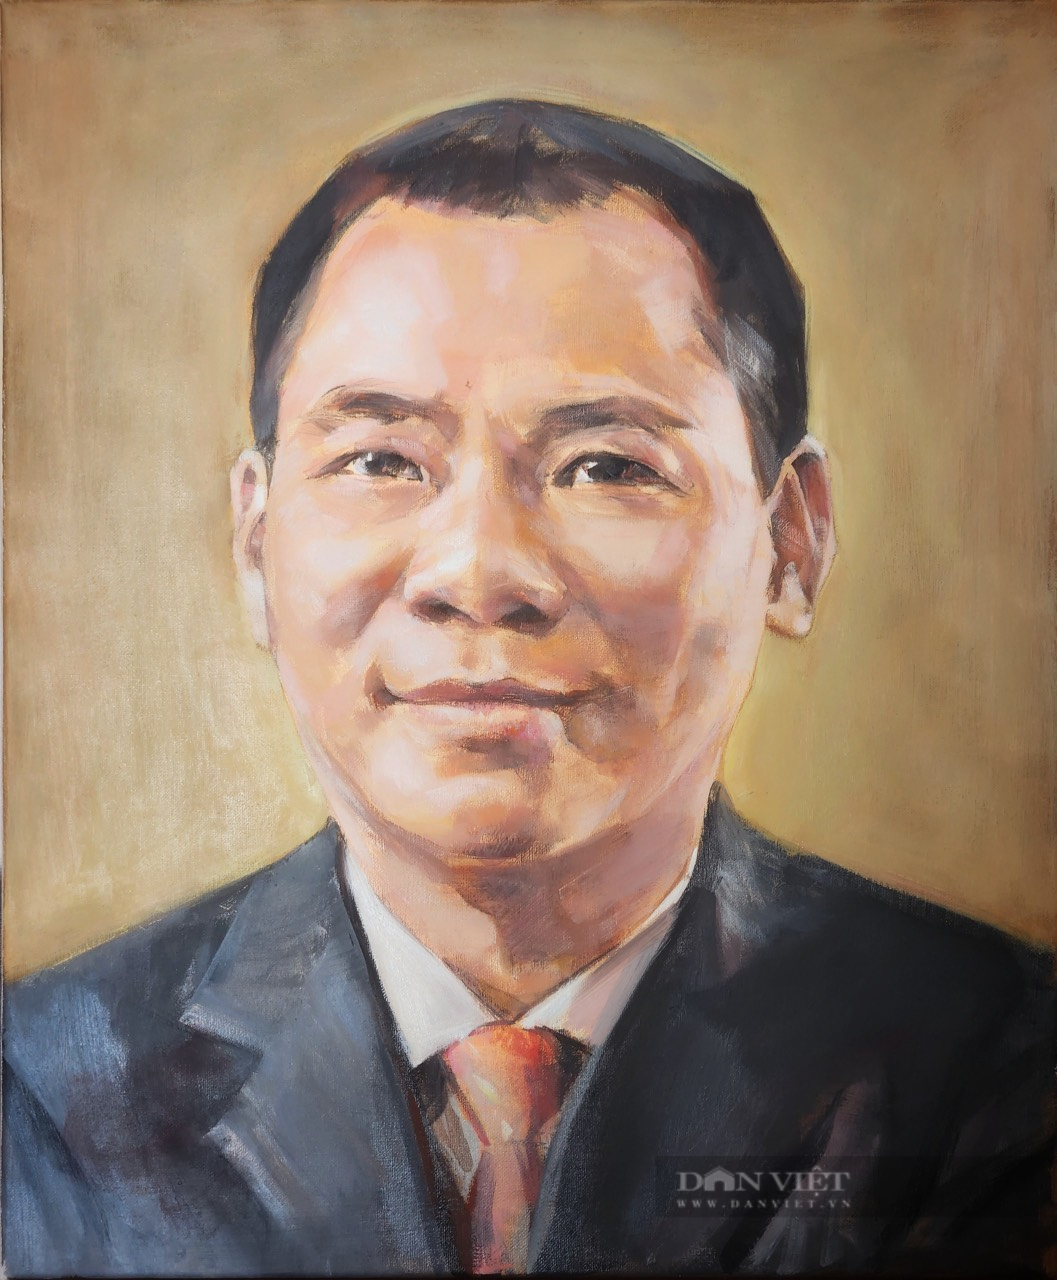 Triển lãm tranh về doanh nhân Phạm Nhật Vượng, Trương Gia Bình...            - Ảnh 7.